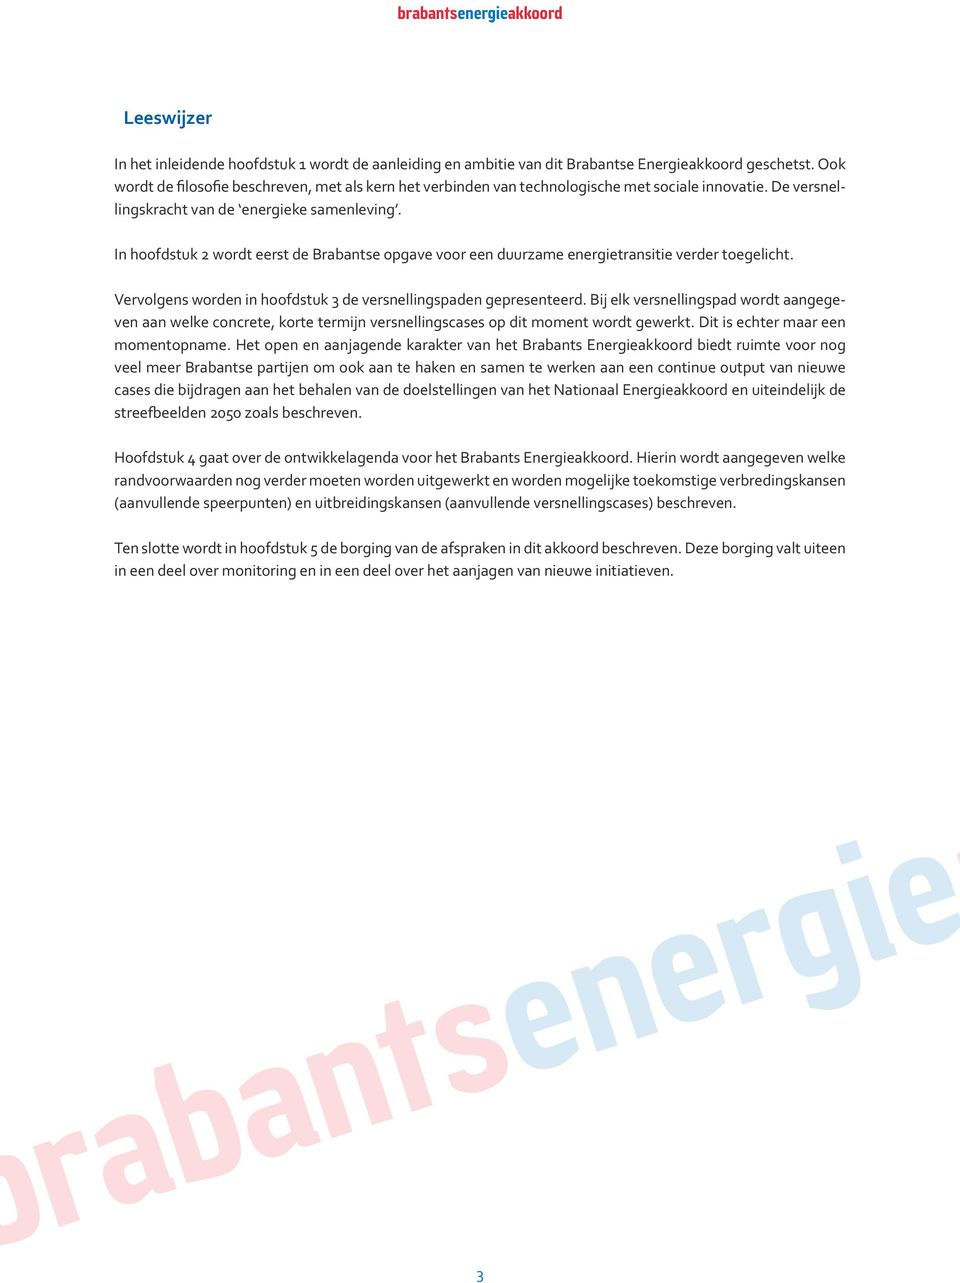 In hoofdstuk 2 wordt eerst de Brabantse opgave voor een duurzame energietransitie verder toegelicht. Vervolgens worden in hoofdstuk 3 de versnellingspaden gepresenteerd.